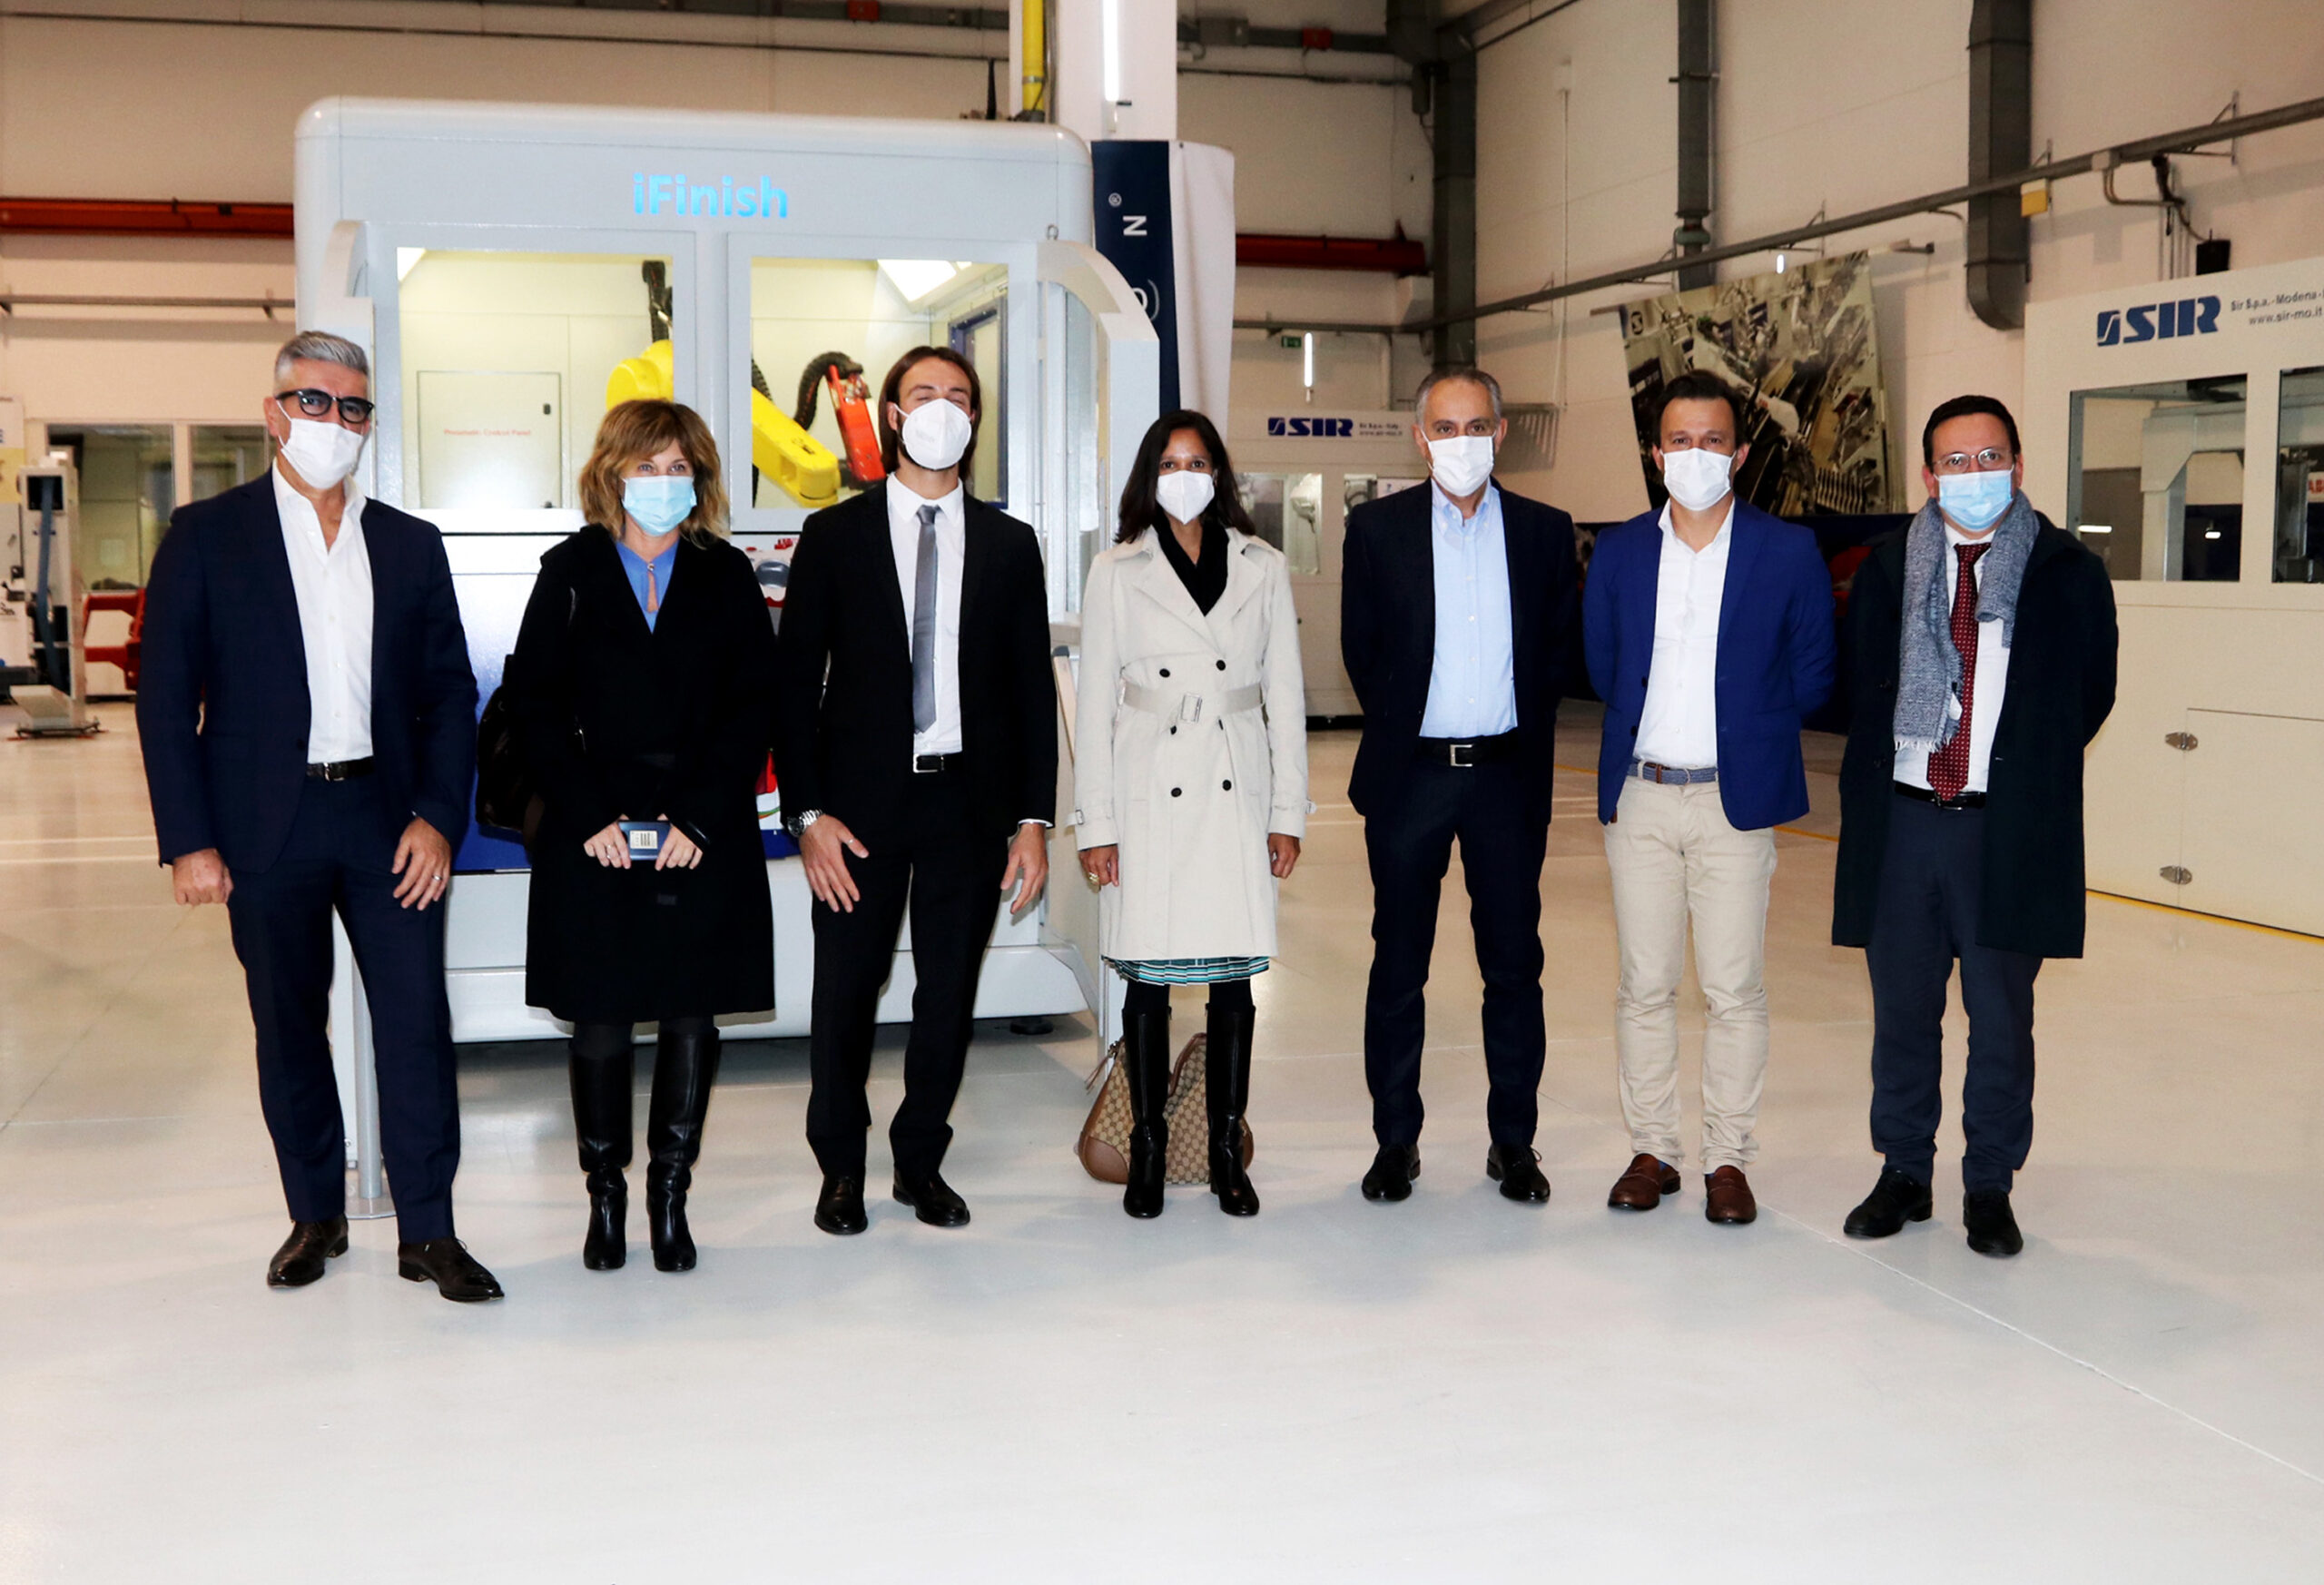 Cónsul estadounidense visita Sir Robotics Modena